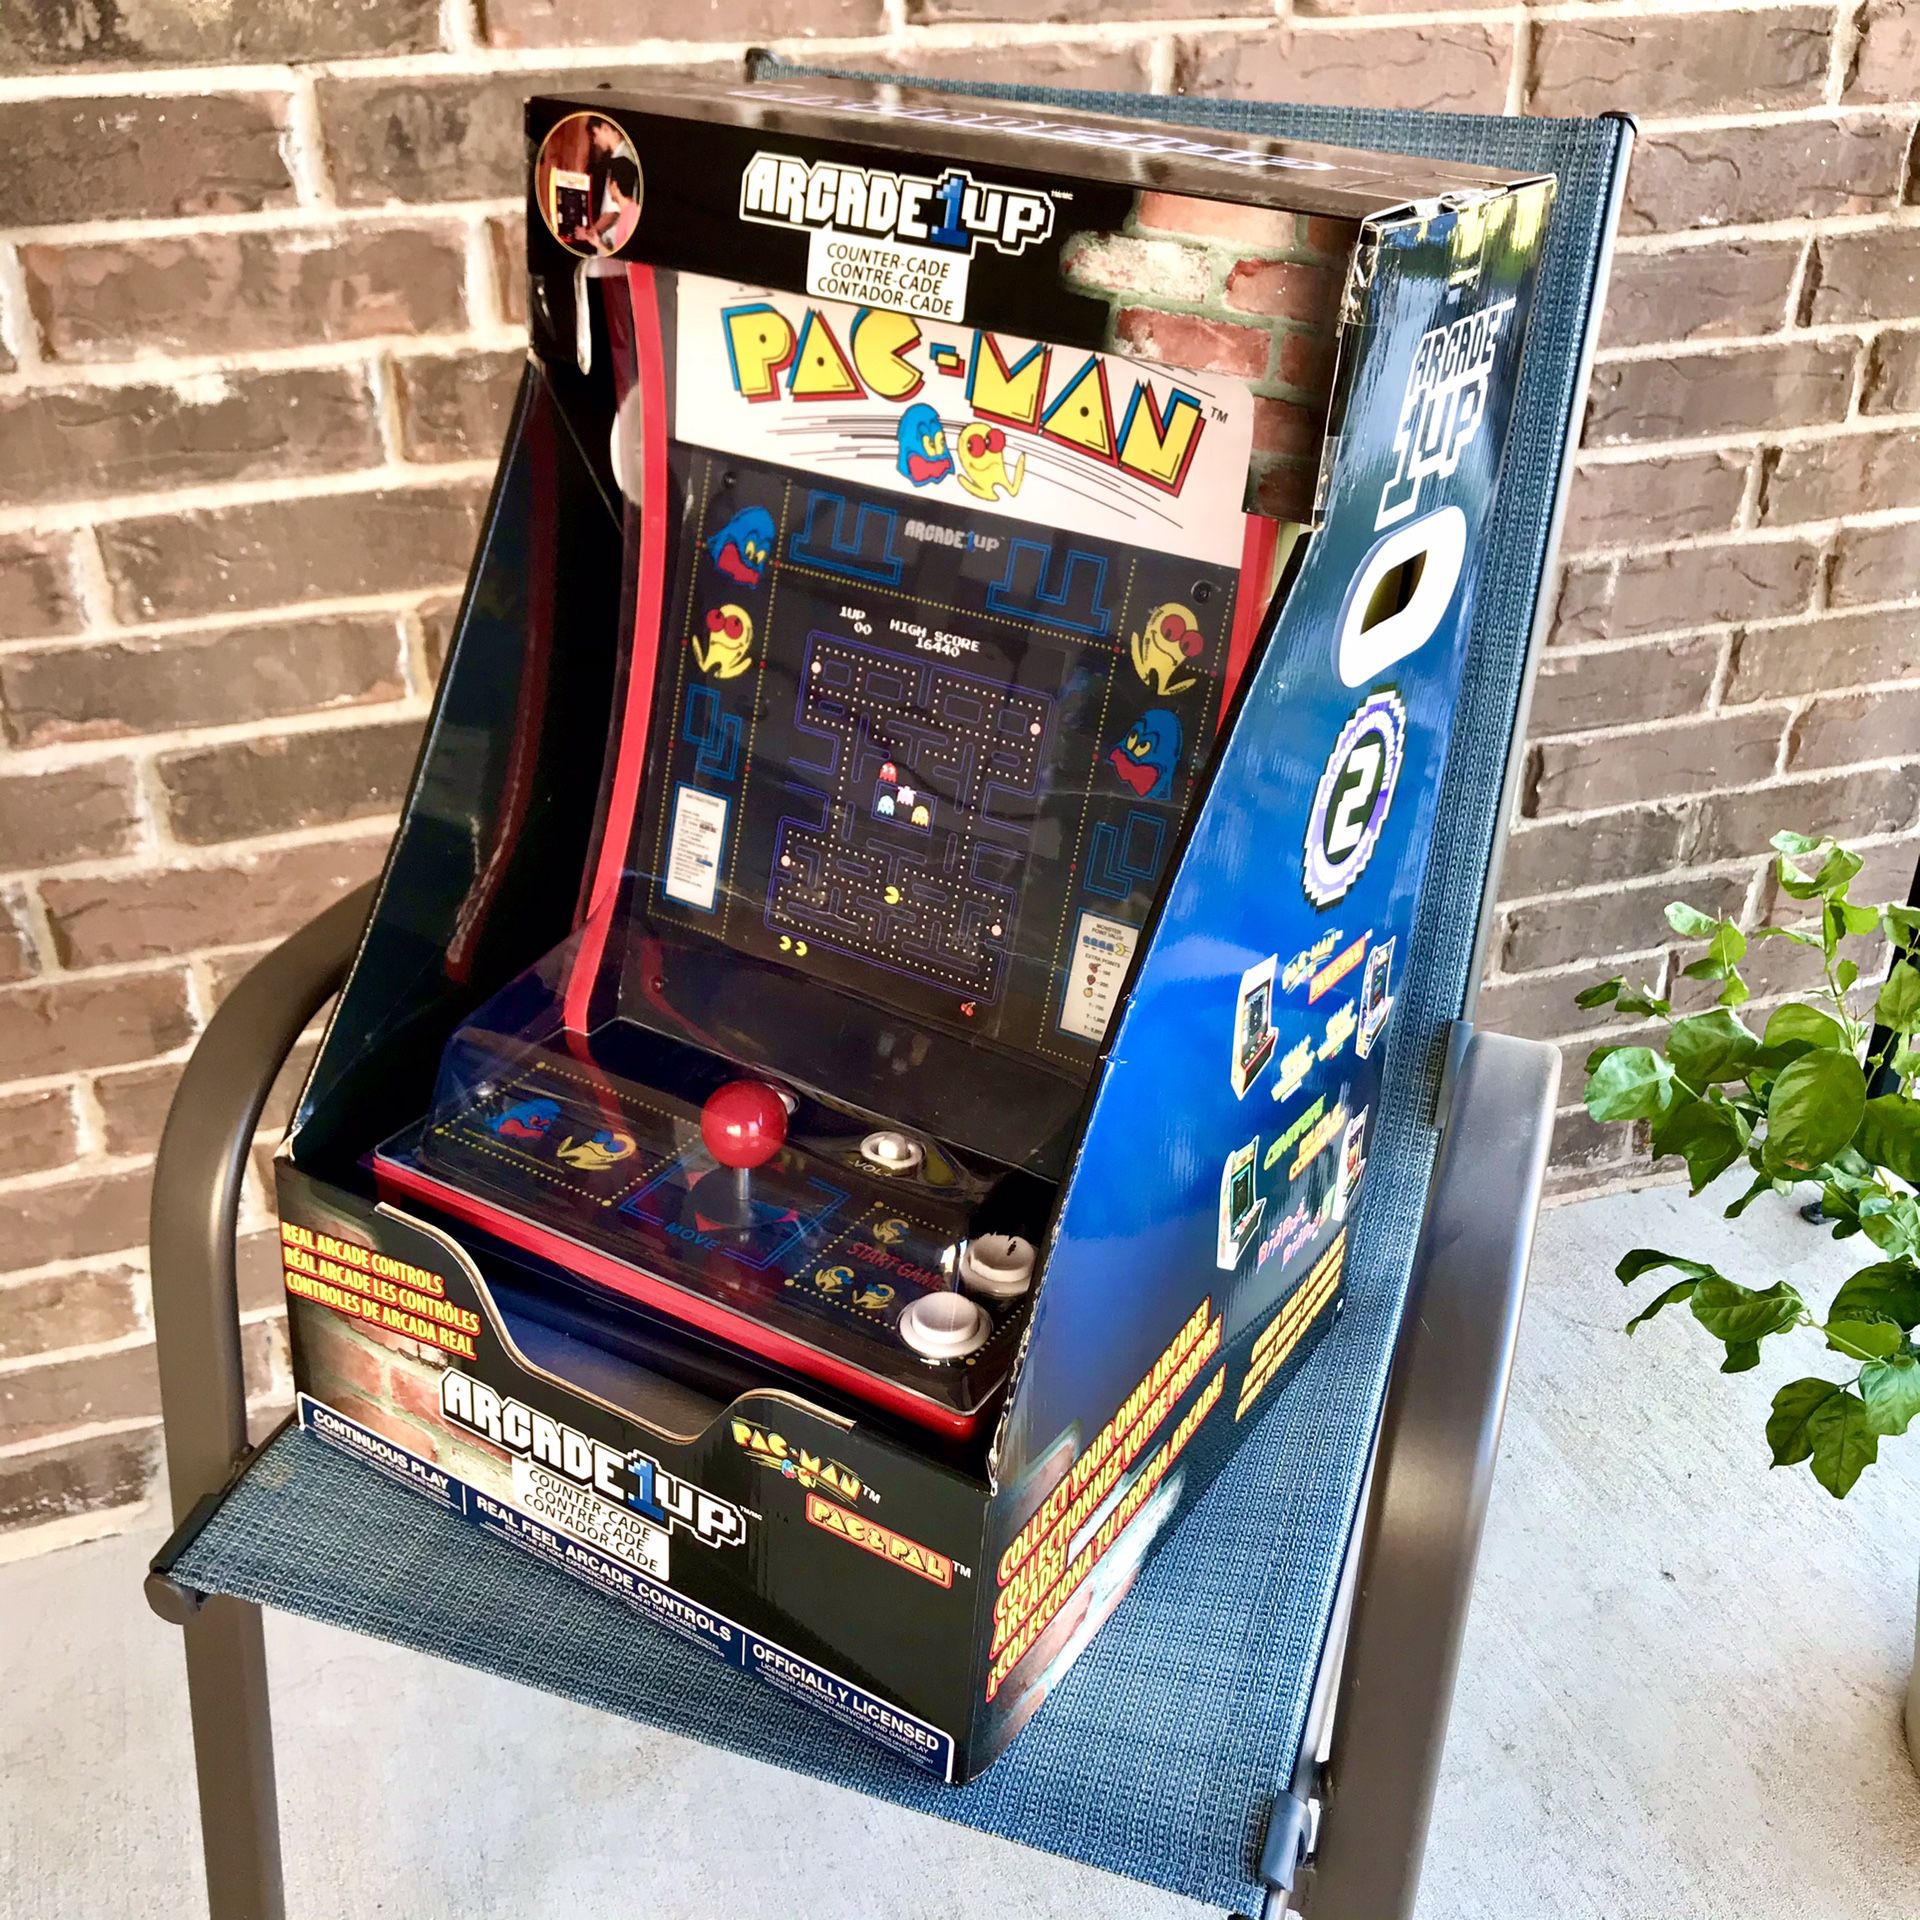 Arcade1up Pacman Countercade arcade game